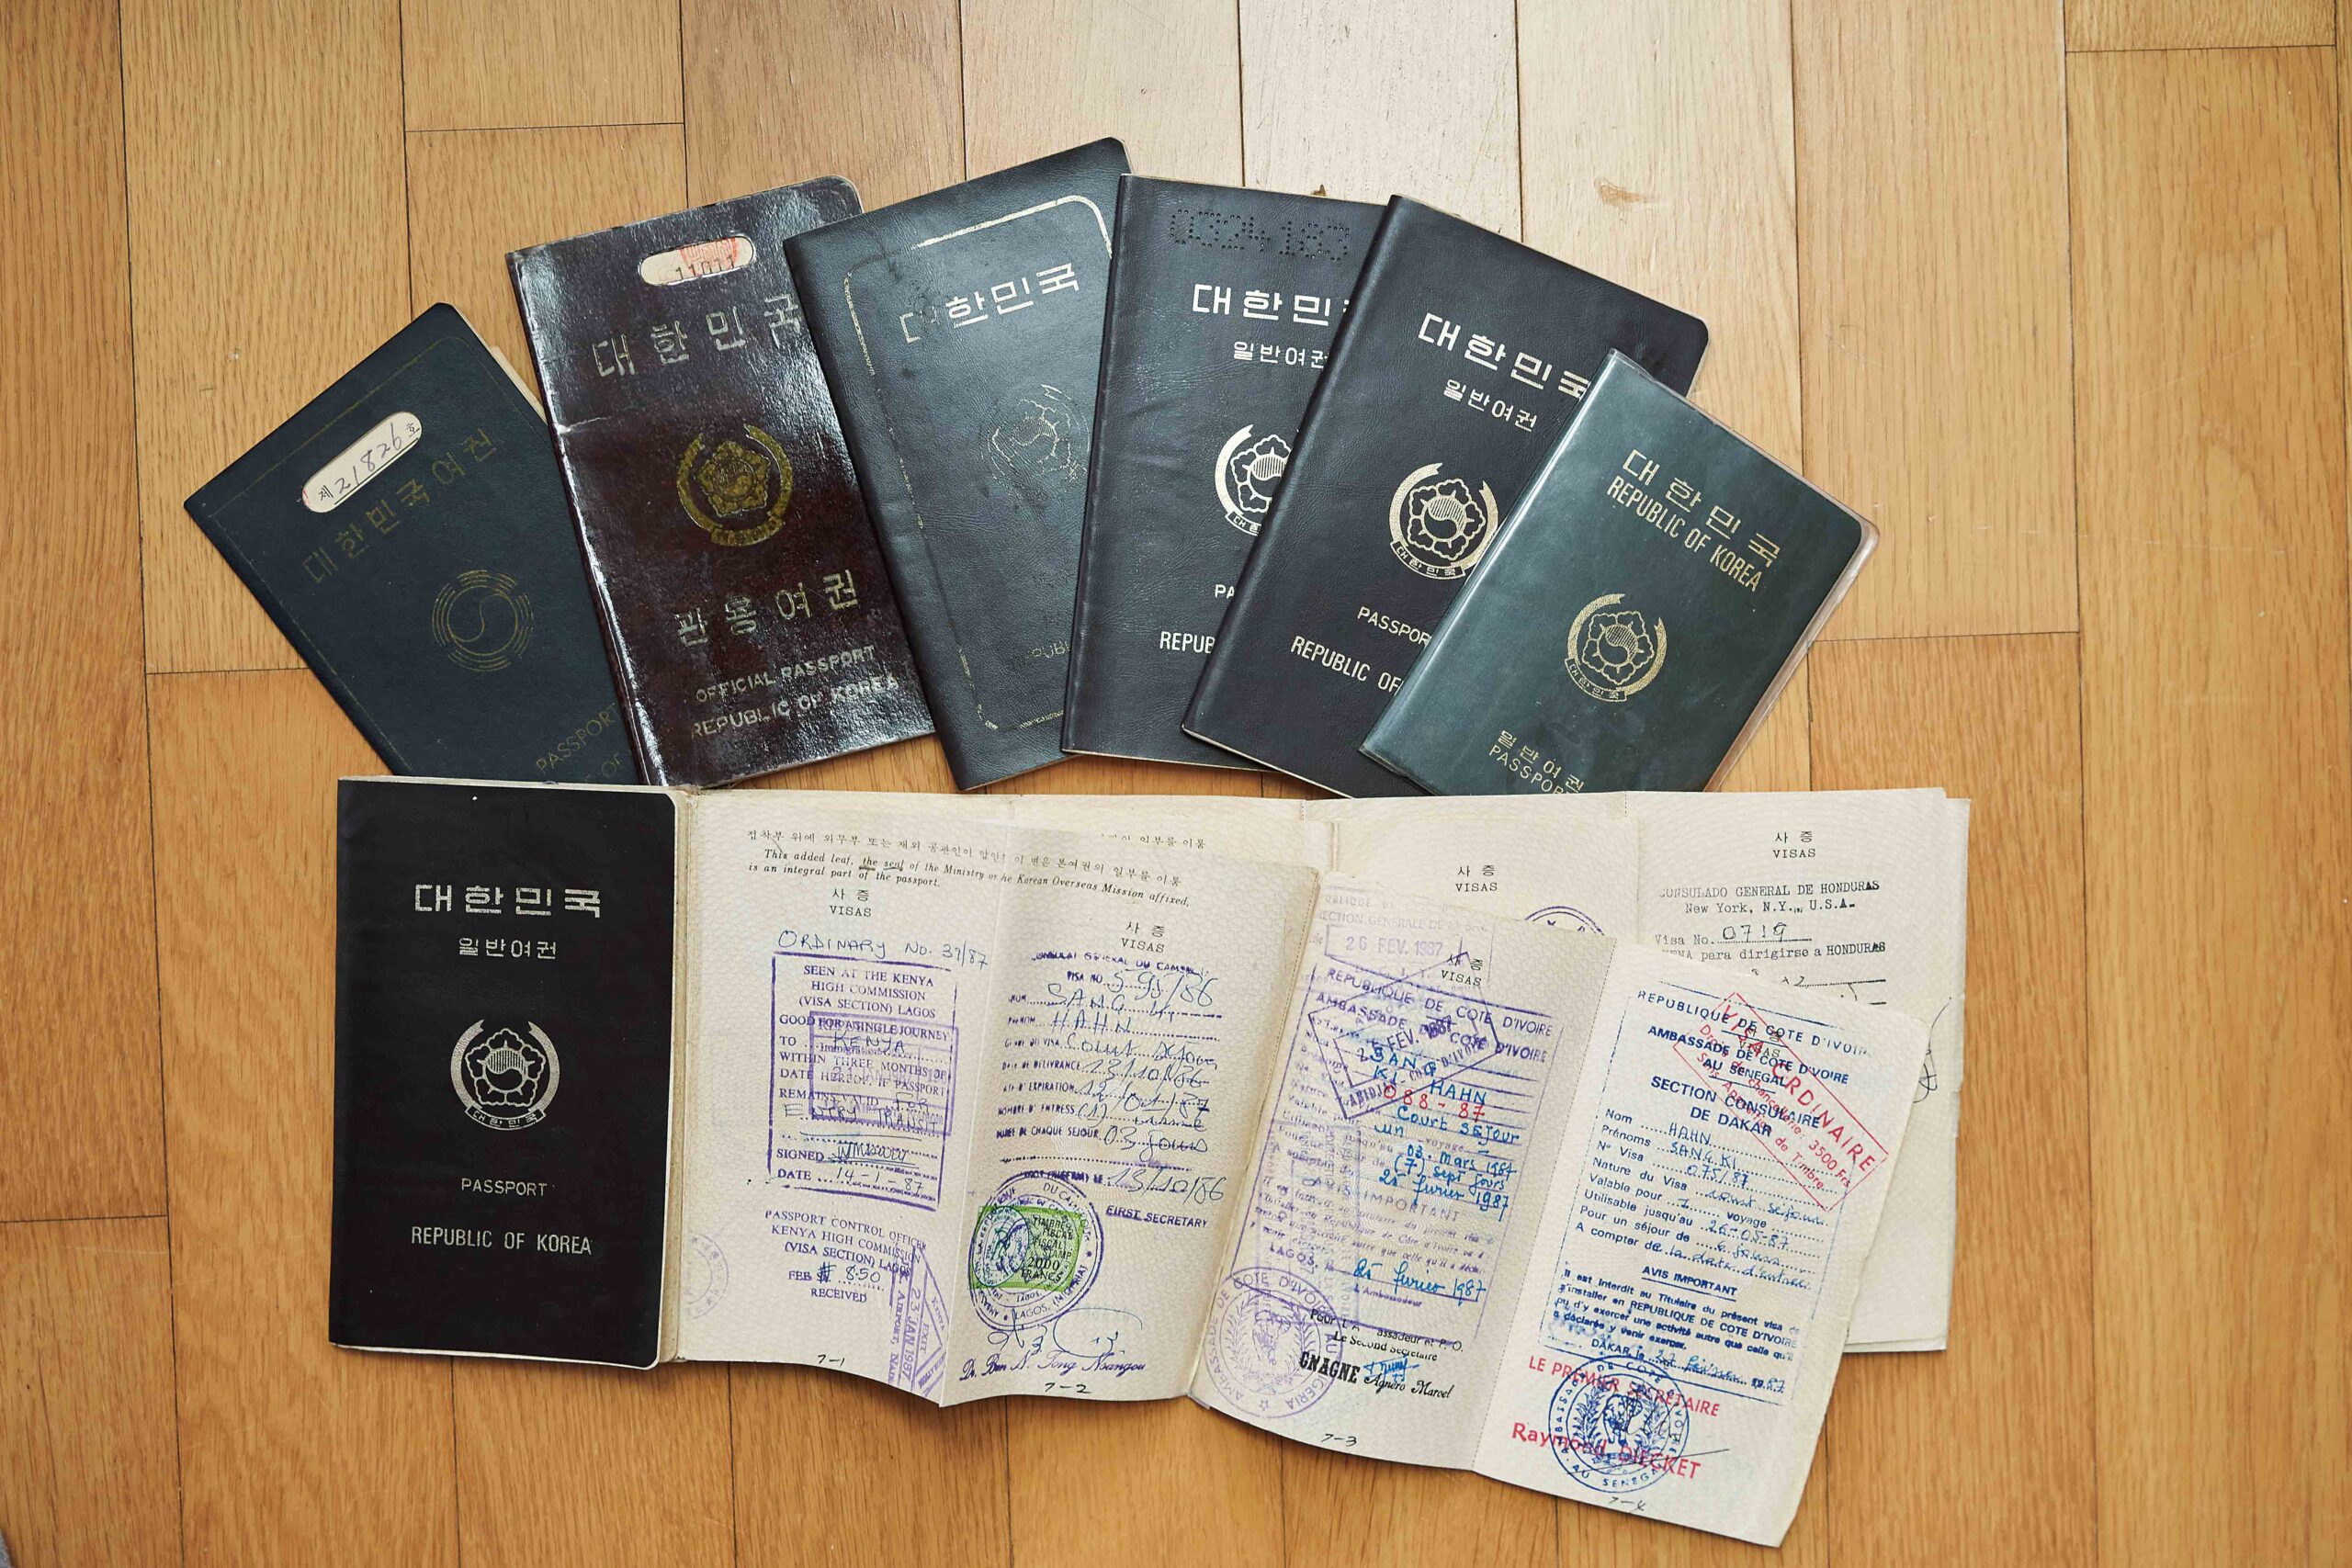 한상기 박사는 국제열대농학연구소(IITA)에서 23년간 근무하는 동안 여권을 8번 재발급했다. 당시 여권 재발급이 어려웠기 때문에 종이를 여러장 덧대어 사용하기도 했다. /김정호 C영상미디어 객원기자